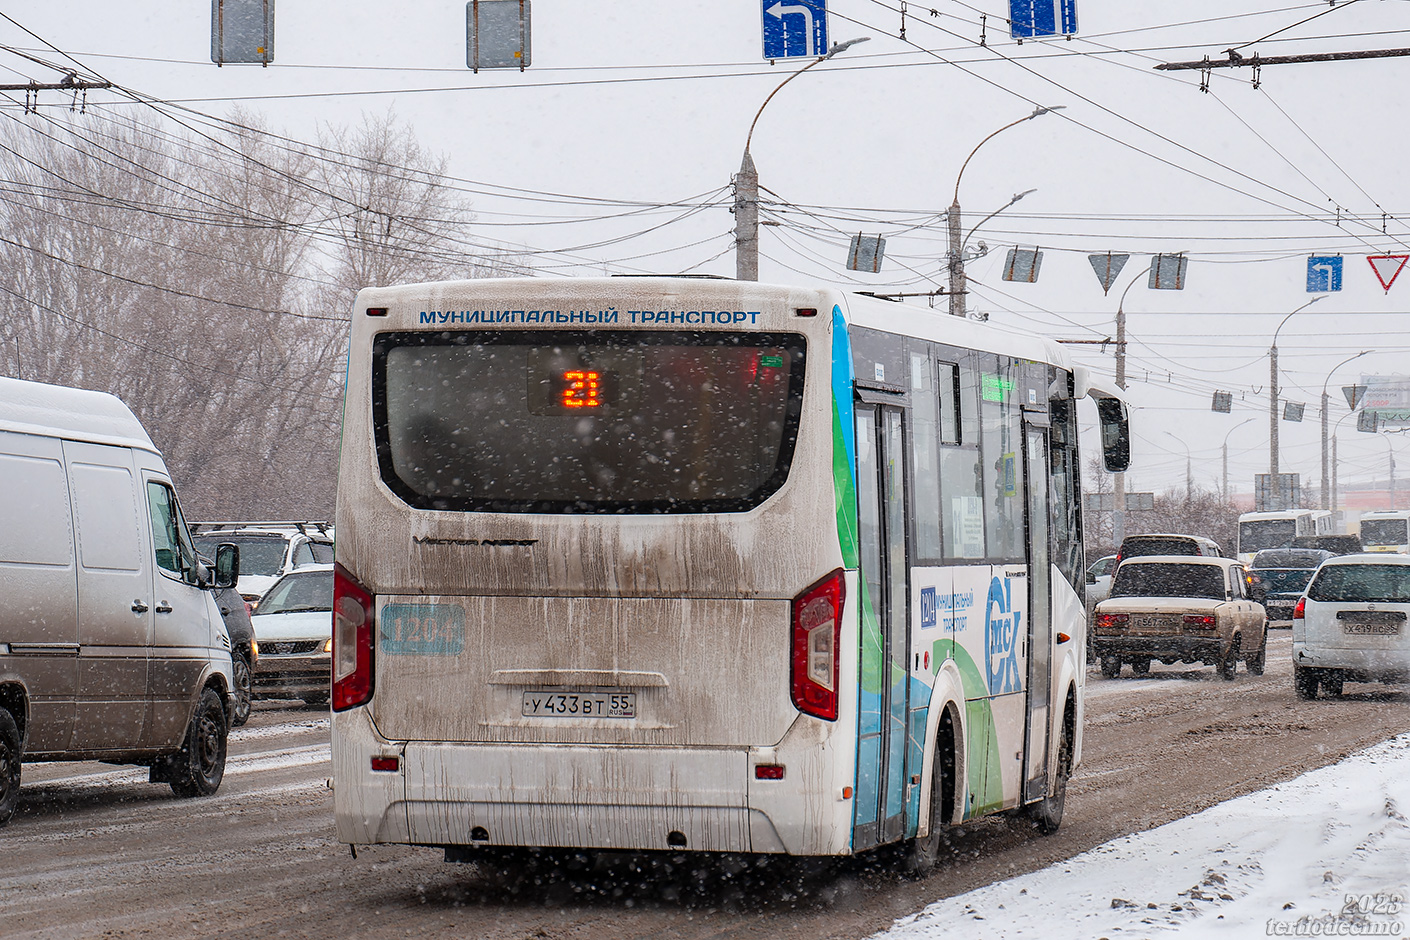 Omsk region, PAZ-320435-04 "Vector Next" Nr. 1204